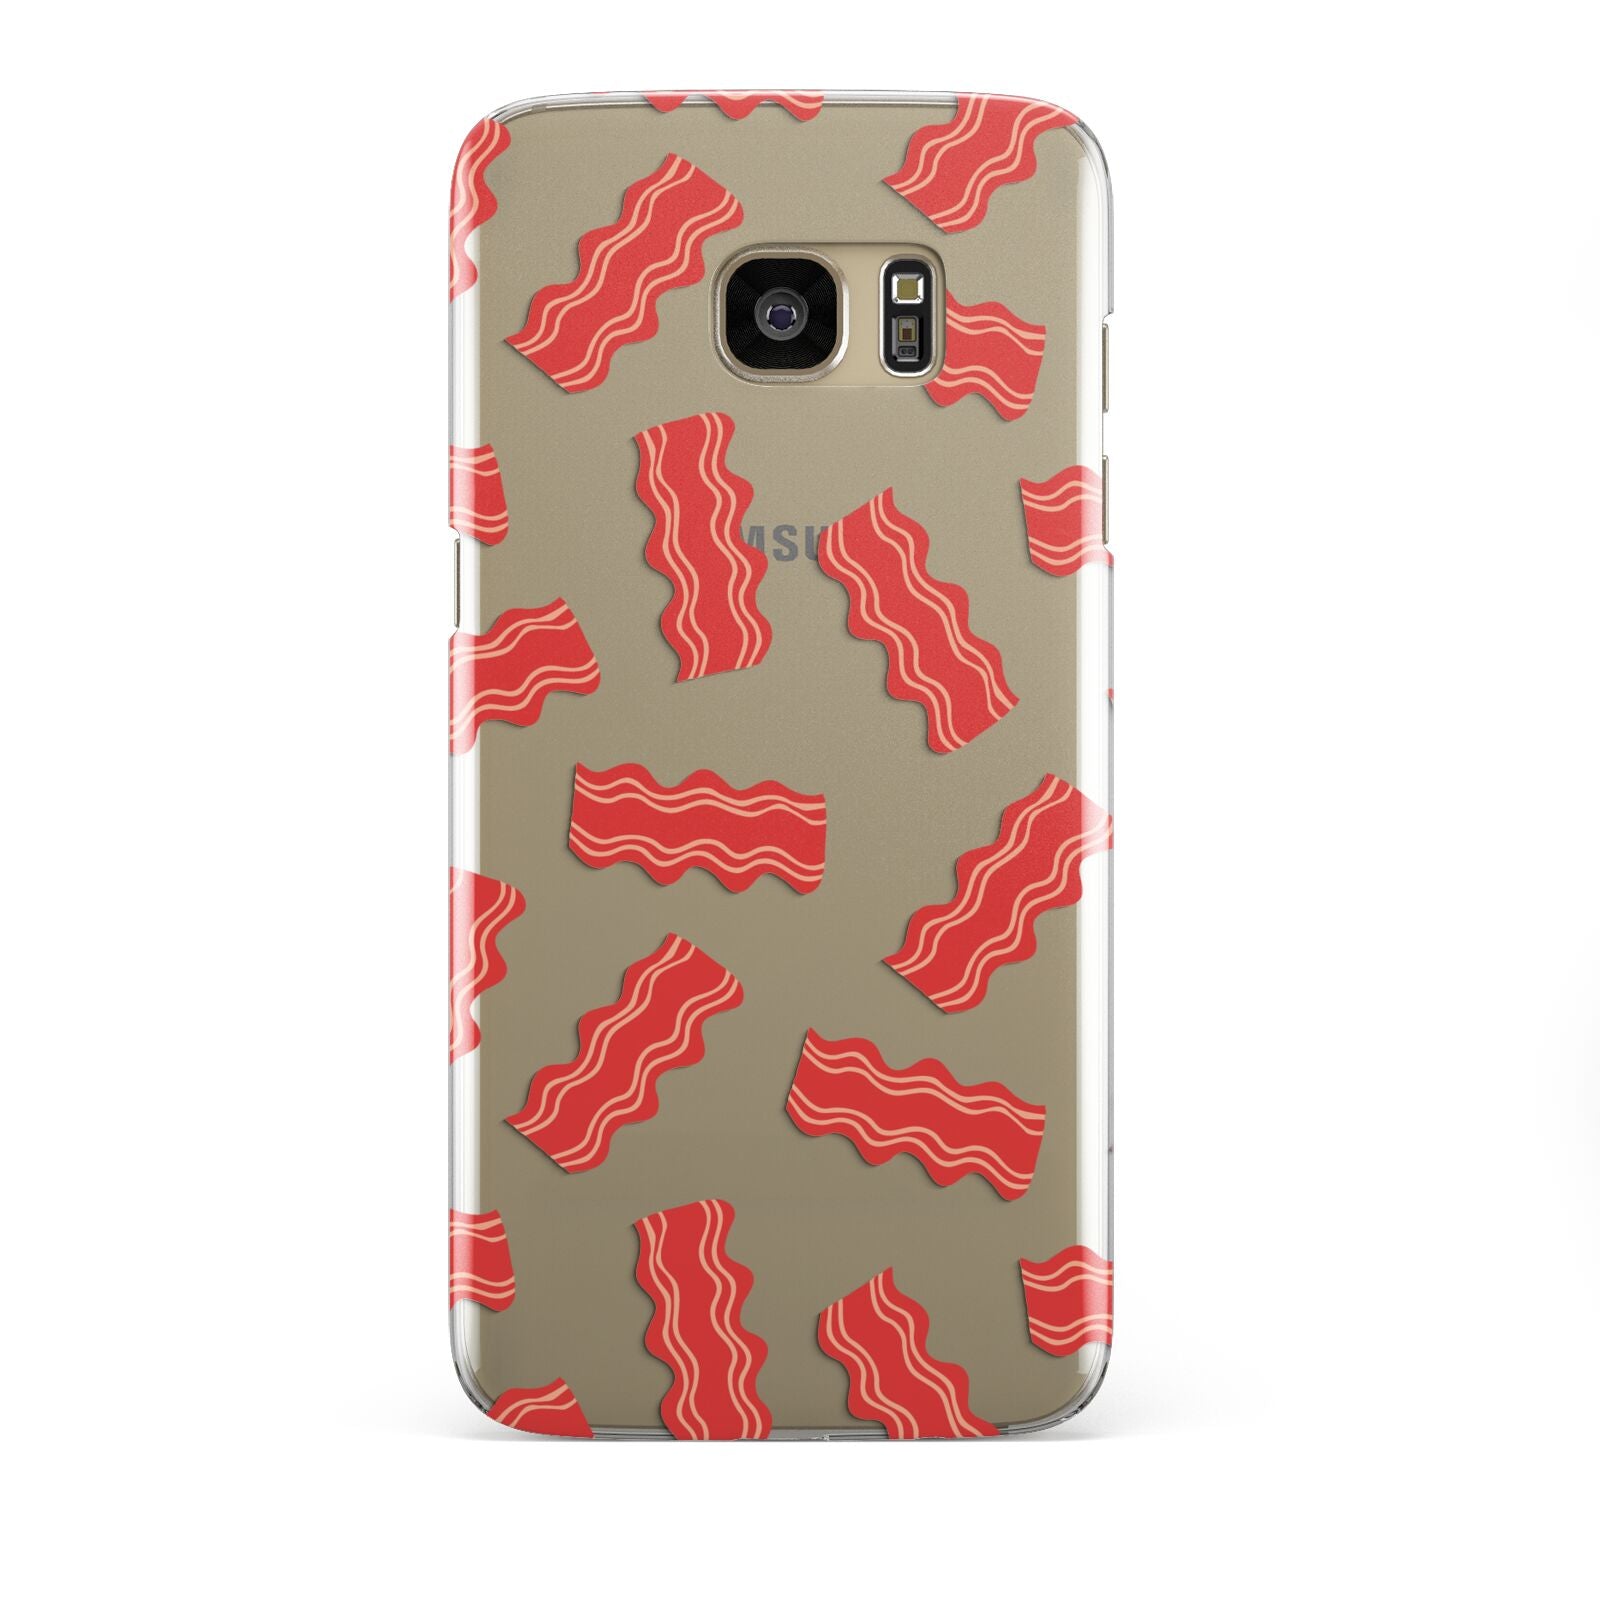 Bacon Samsung Galaxy S7 Edge Case